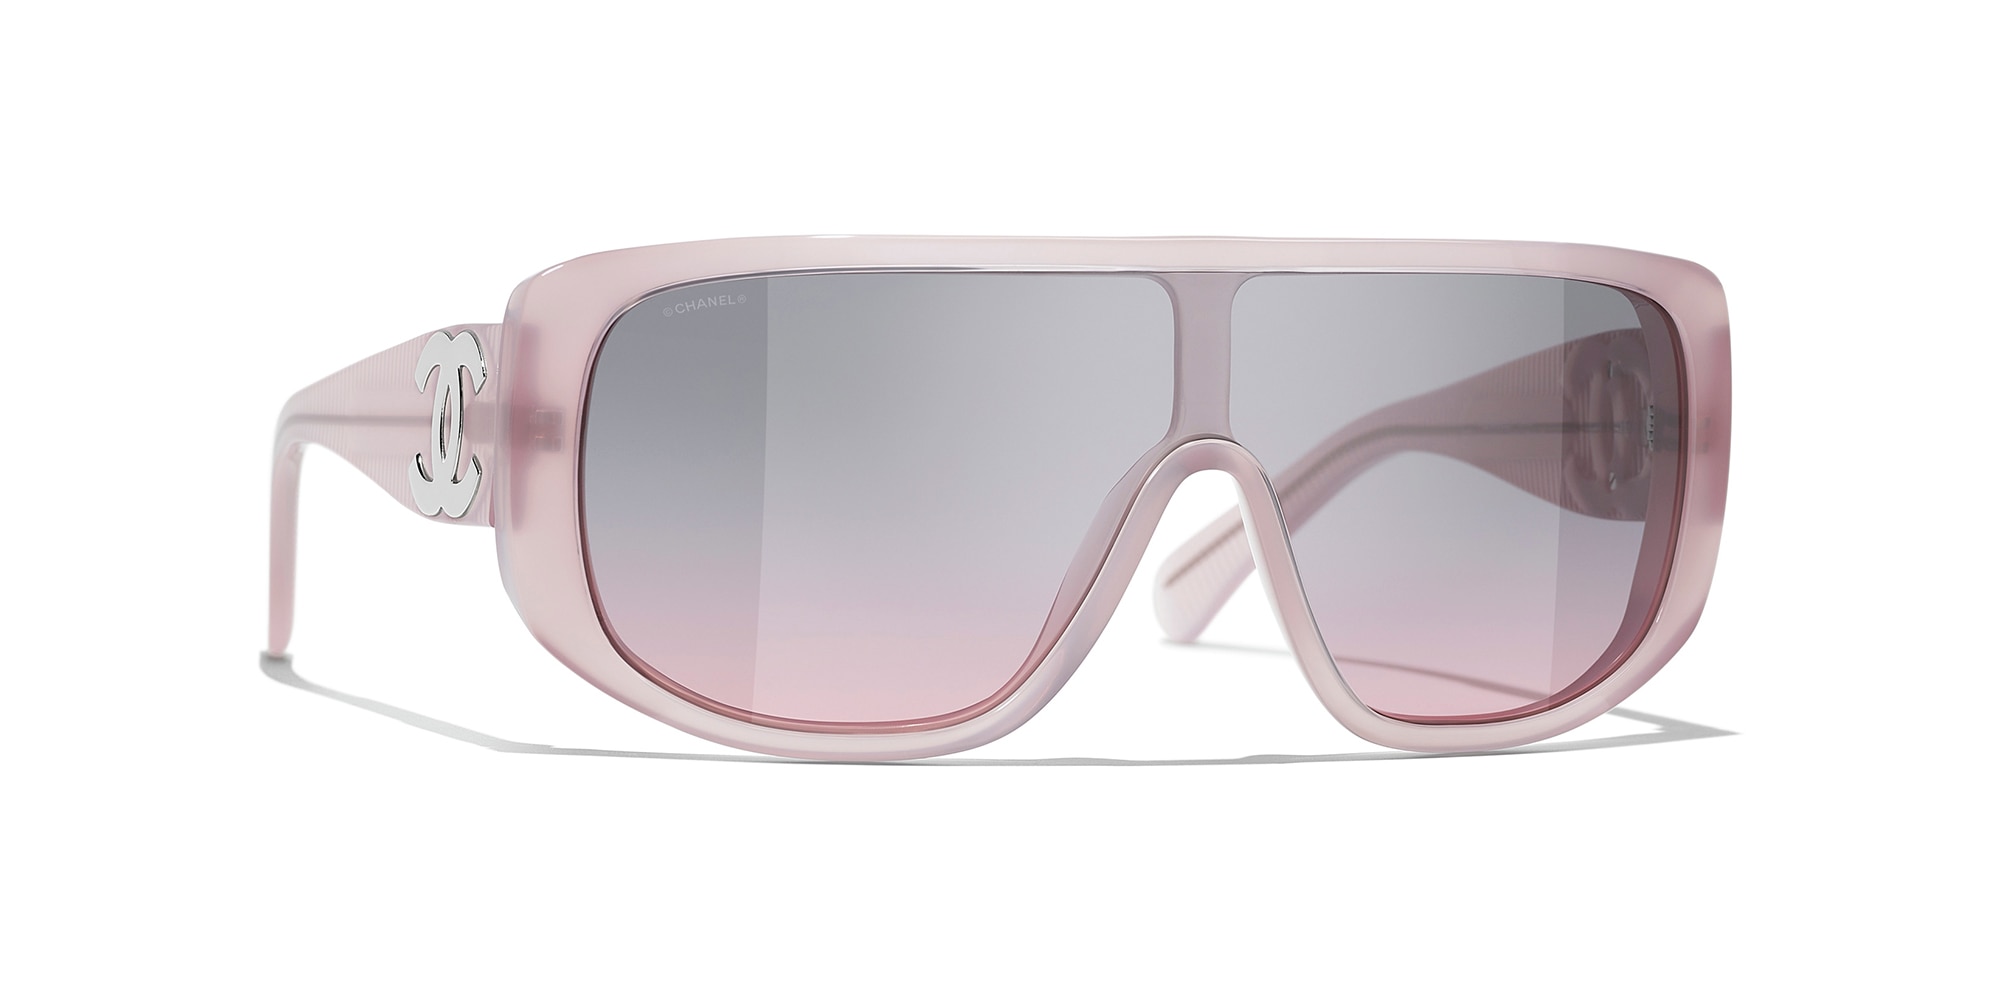 Sunglasses Pilot Sunglasses titanium  calfskin  Fashion  CHANEL